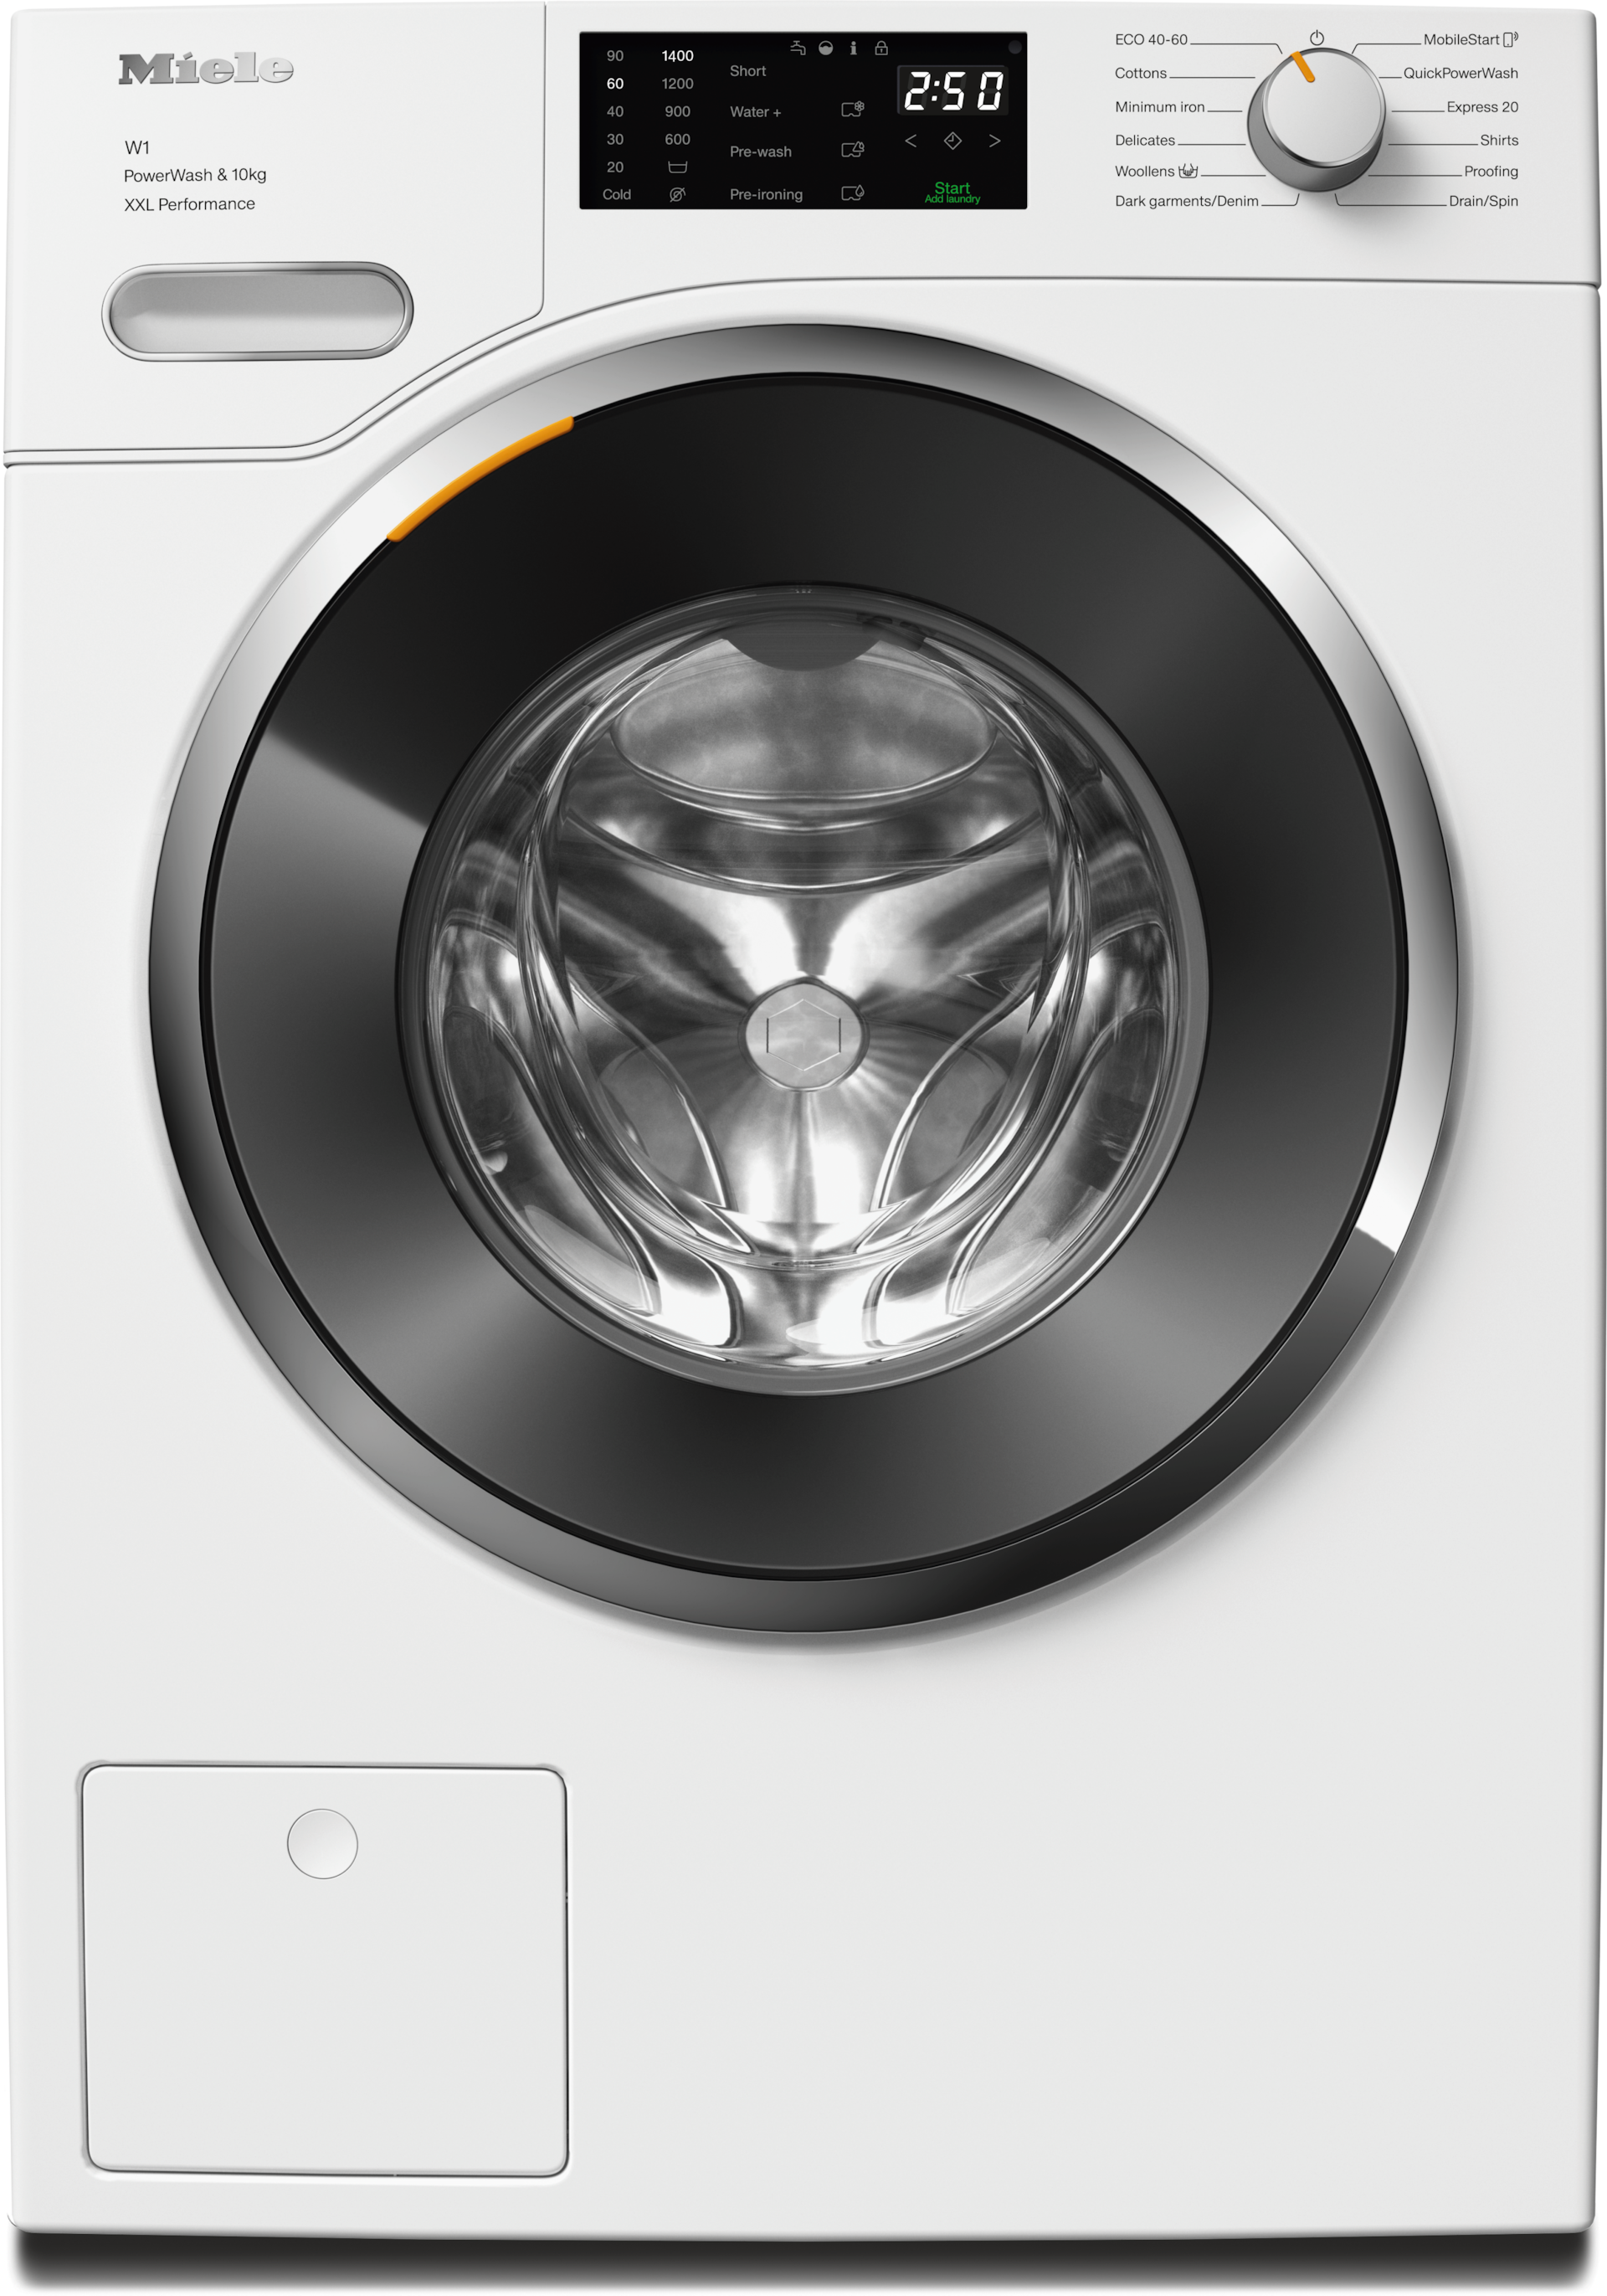 Πλυντήρια ρούχων - WWK360 WCS PWash&10kg Λευκό λωτού - 1